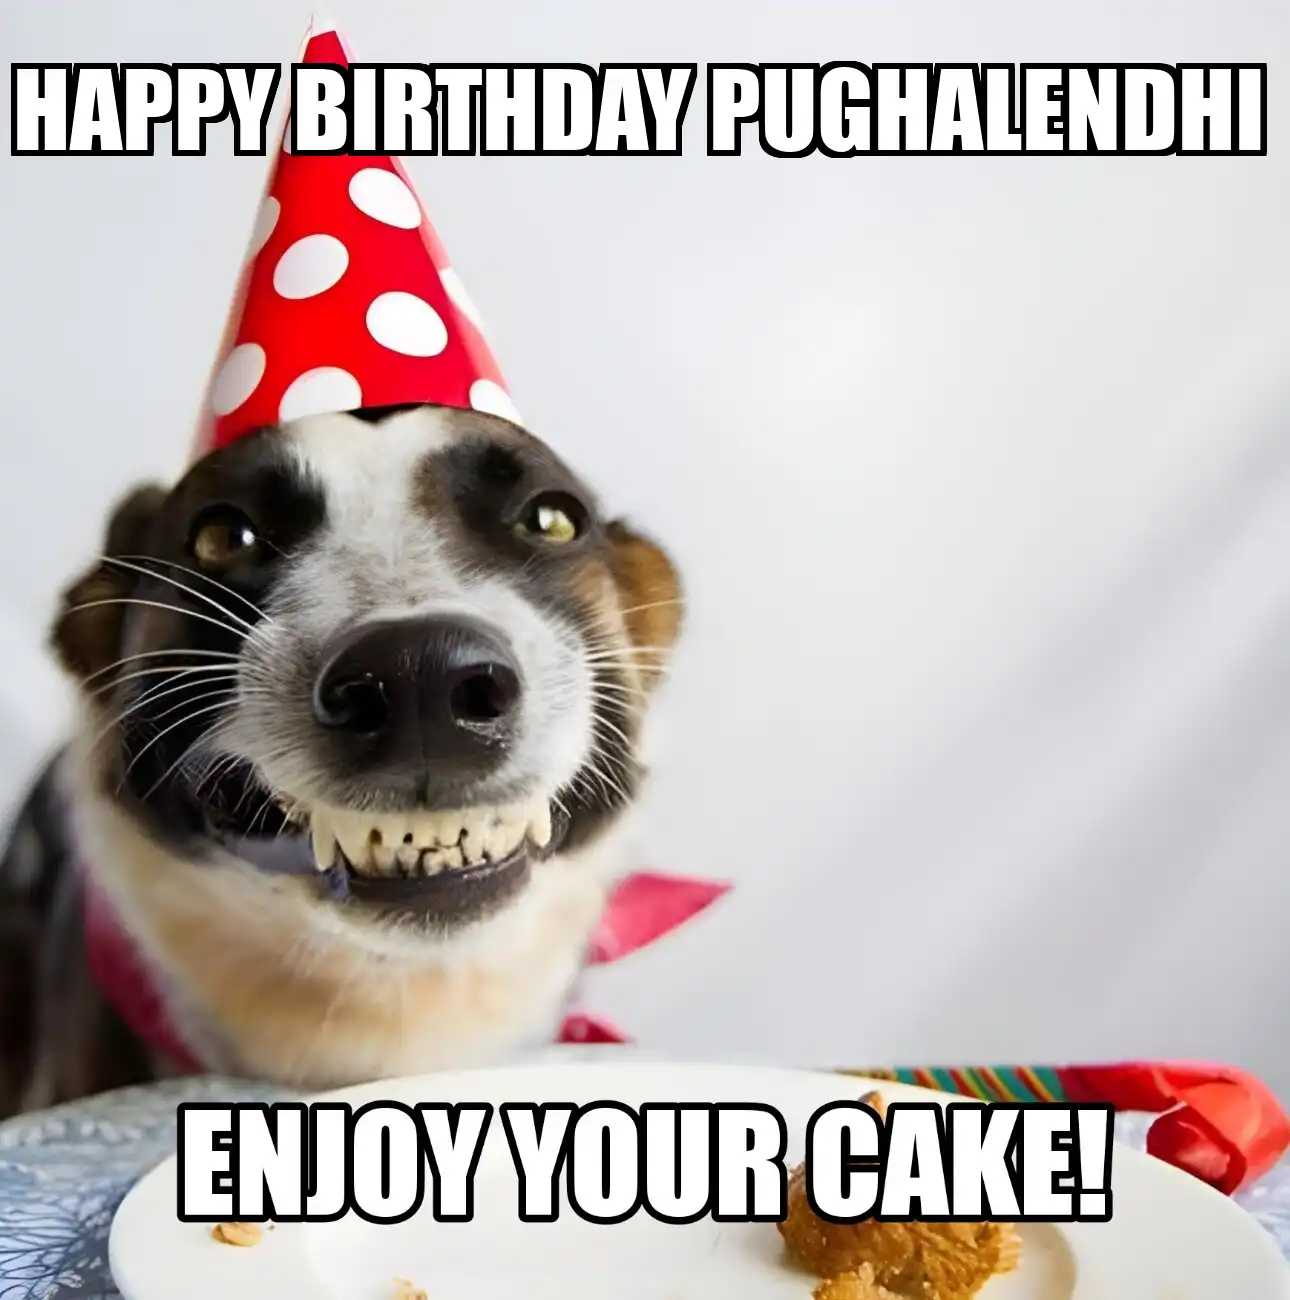 Happy Birthday Pughalendhi Enjoy Your Cake Dog Meme